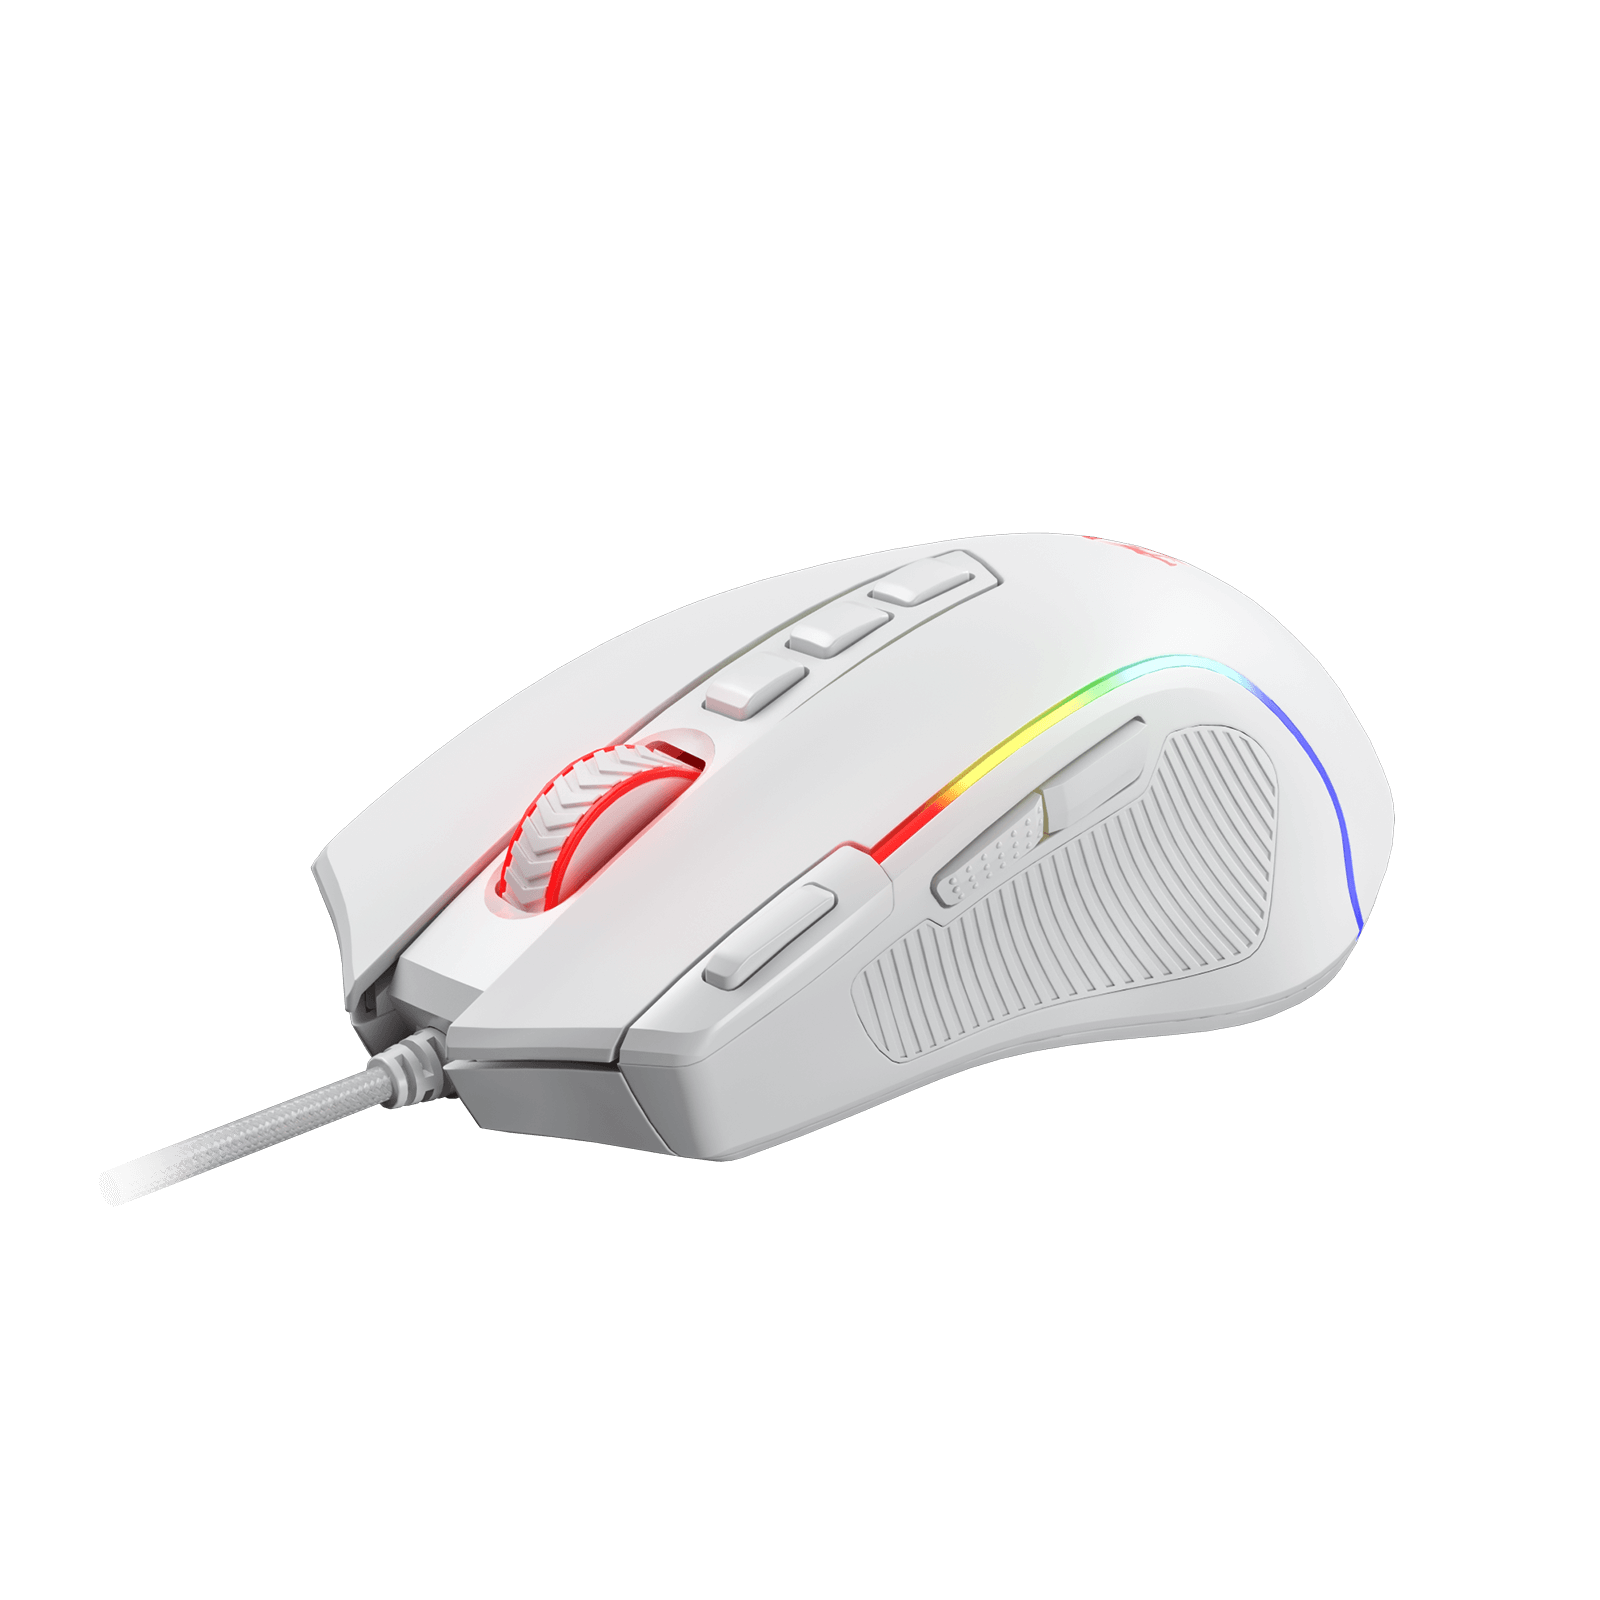 Redragon M612 Predator white Gaming Mouse